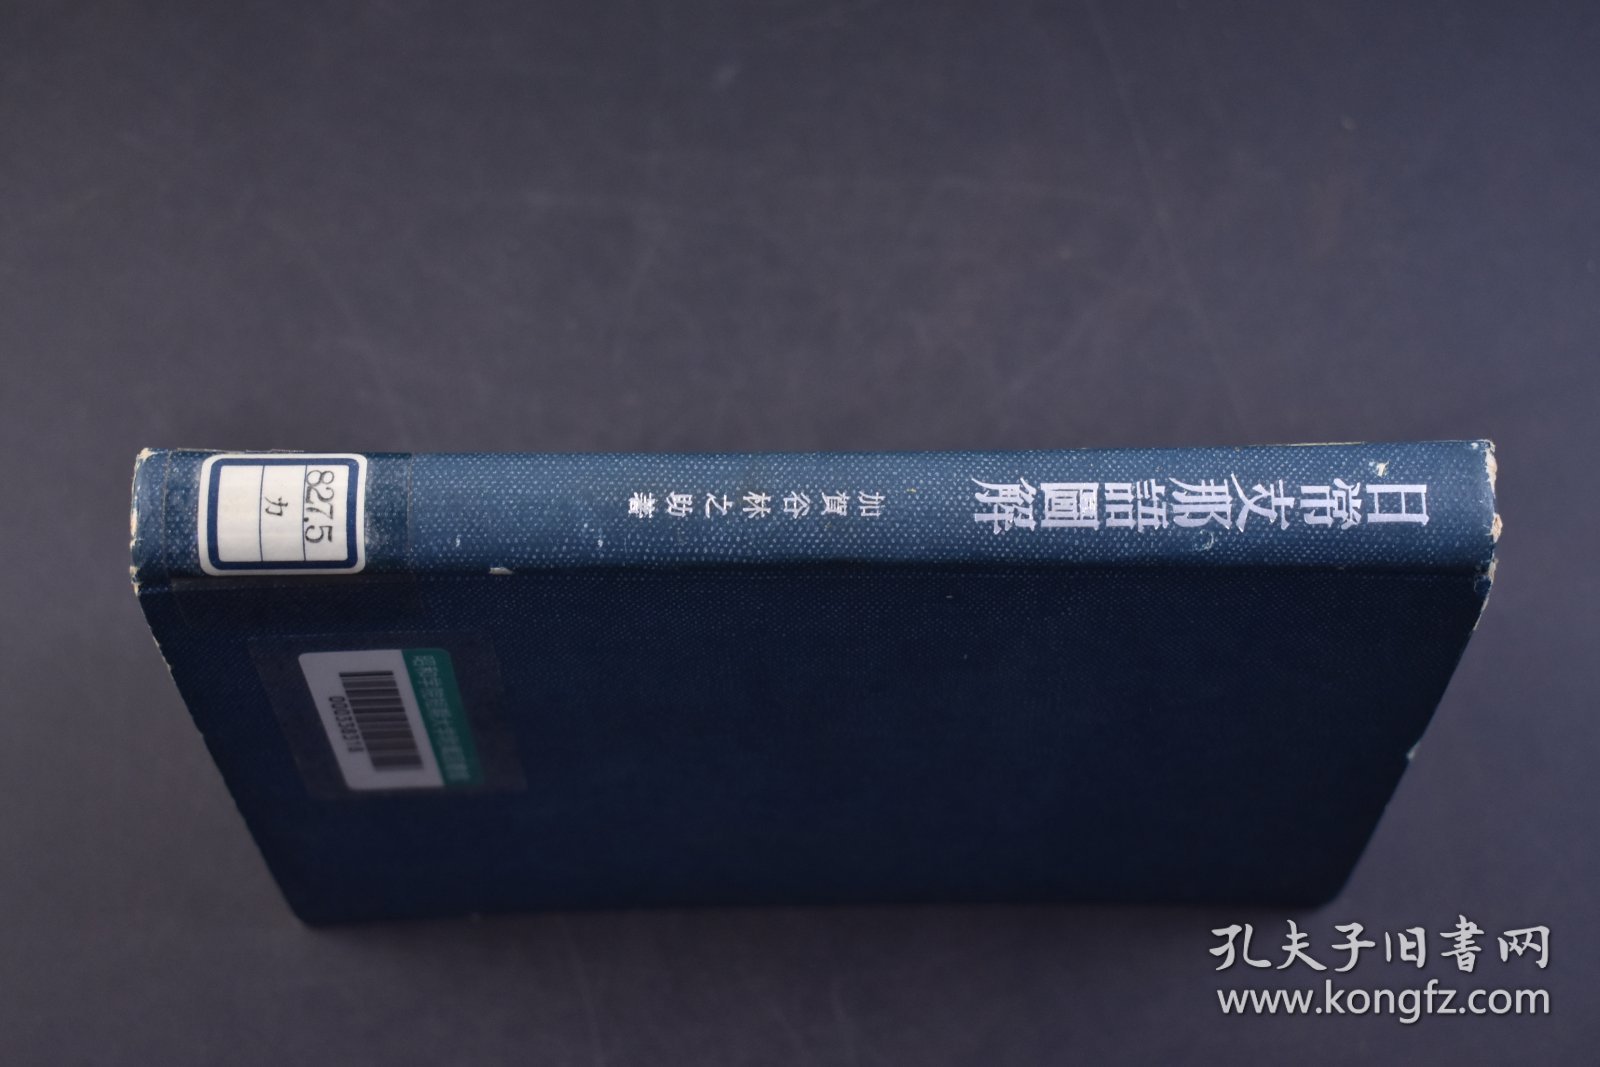 （己5149）初版限量2000部 昭和学院短期大学附属图书馆藏书《日常Z那语图解》精装1册全 加贺古林之助著 伪满洲国国旗图 东京开成馆 日本最早的图解式汉语词典，也是日本最早的 “图解中国” 式汉语教材。这本教材插图内容的涉及范围也很广，既包括语言本体方面的内容，如发音，词类，汉语概说等；还包括大量反映当时中国社会生活等方面的插图，如政治，经济，文化，衣食住学行等。1943年 尺寸21*15CM